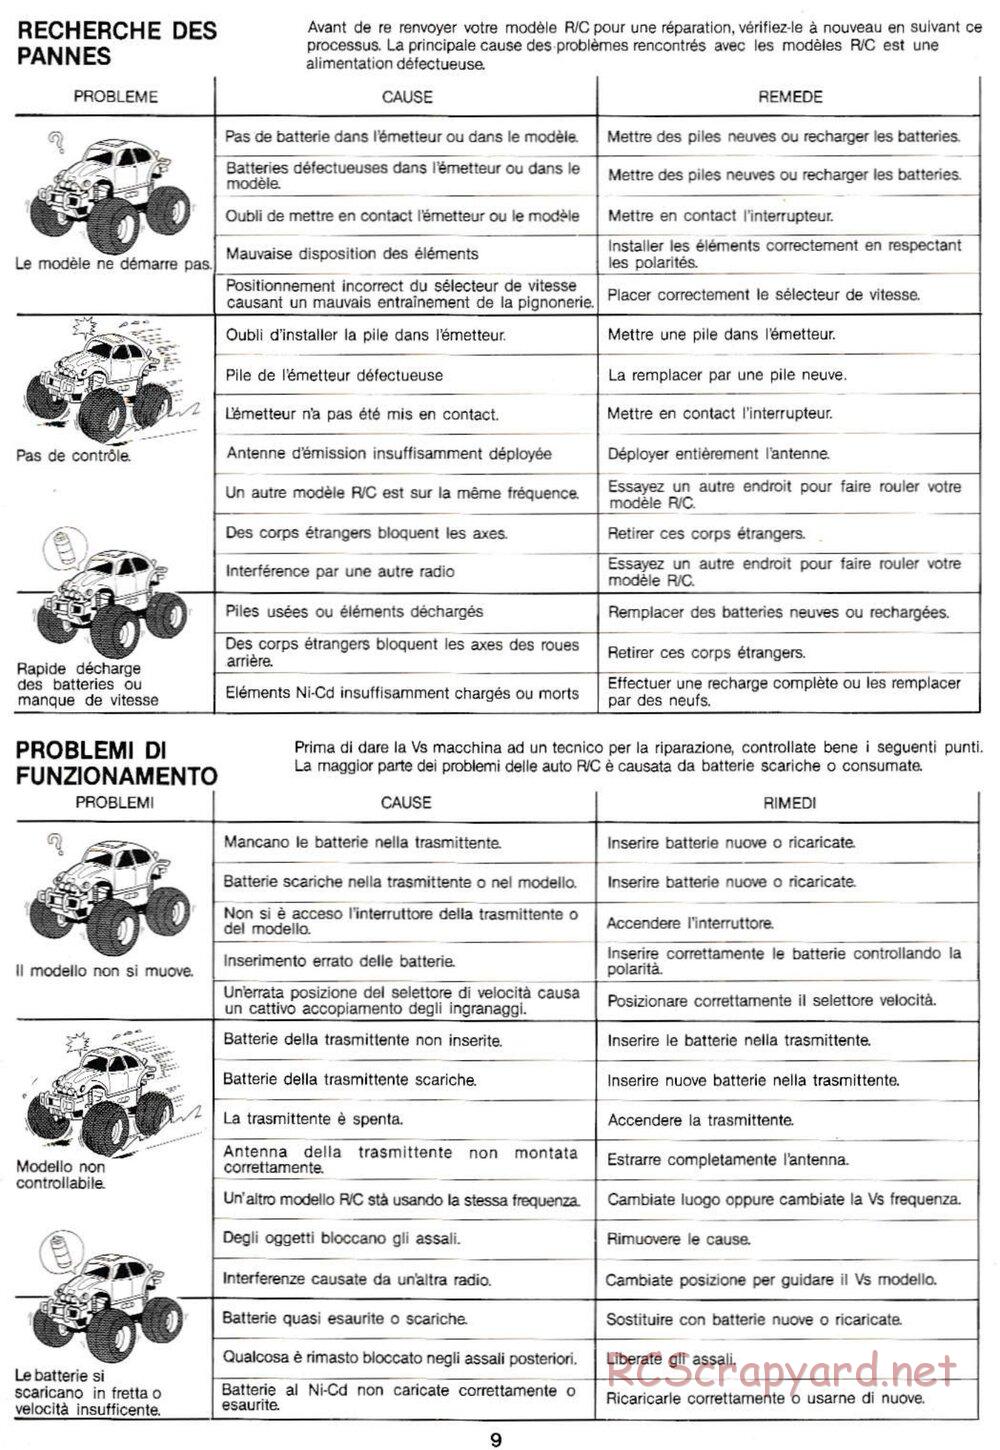 Tamiya - Monster Beetle QD Chassis - Manual - Page 9